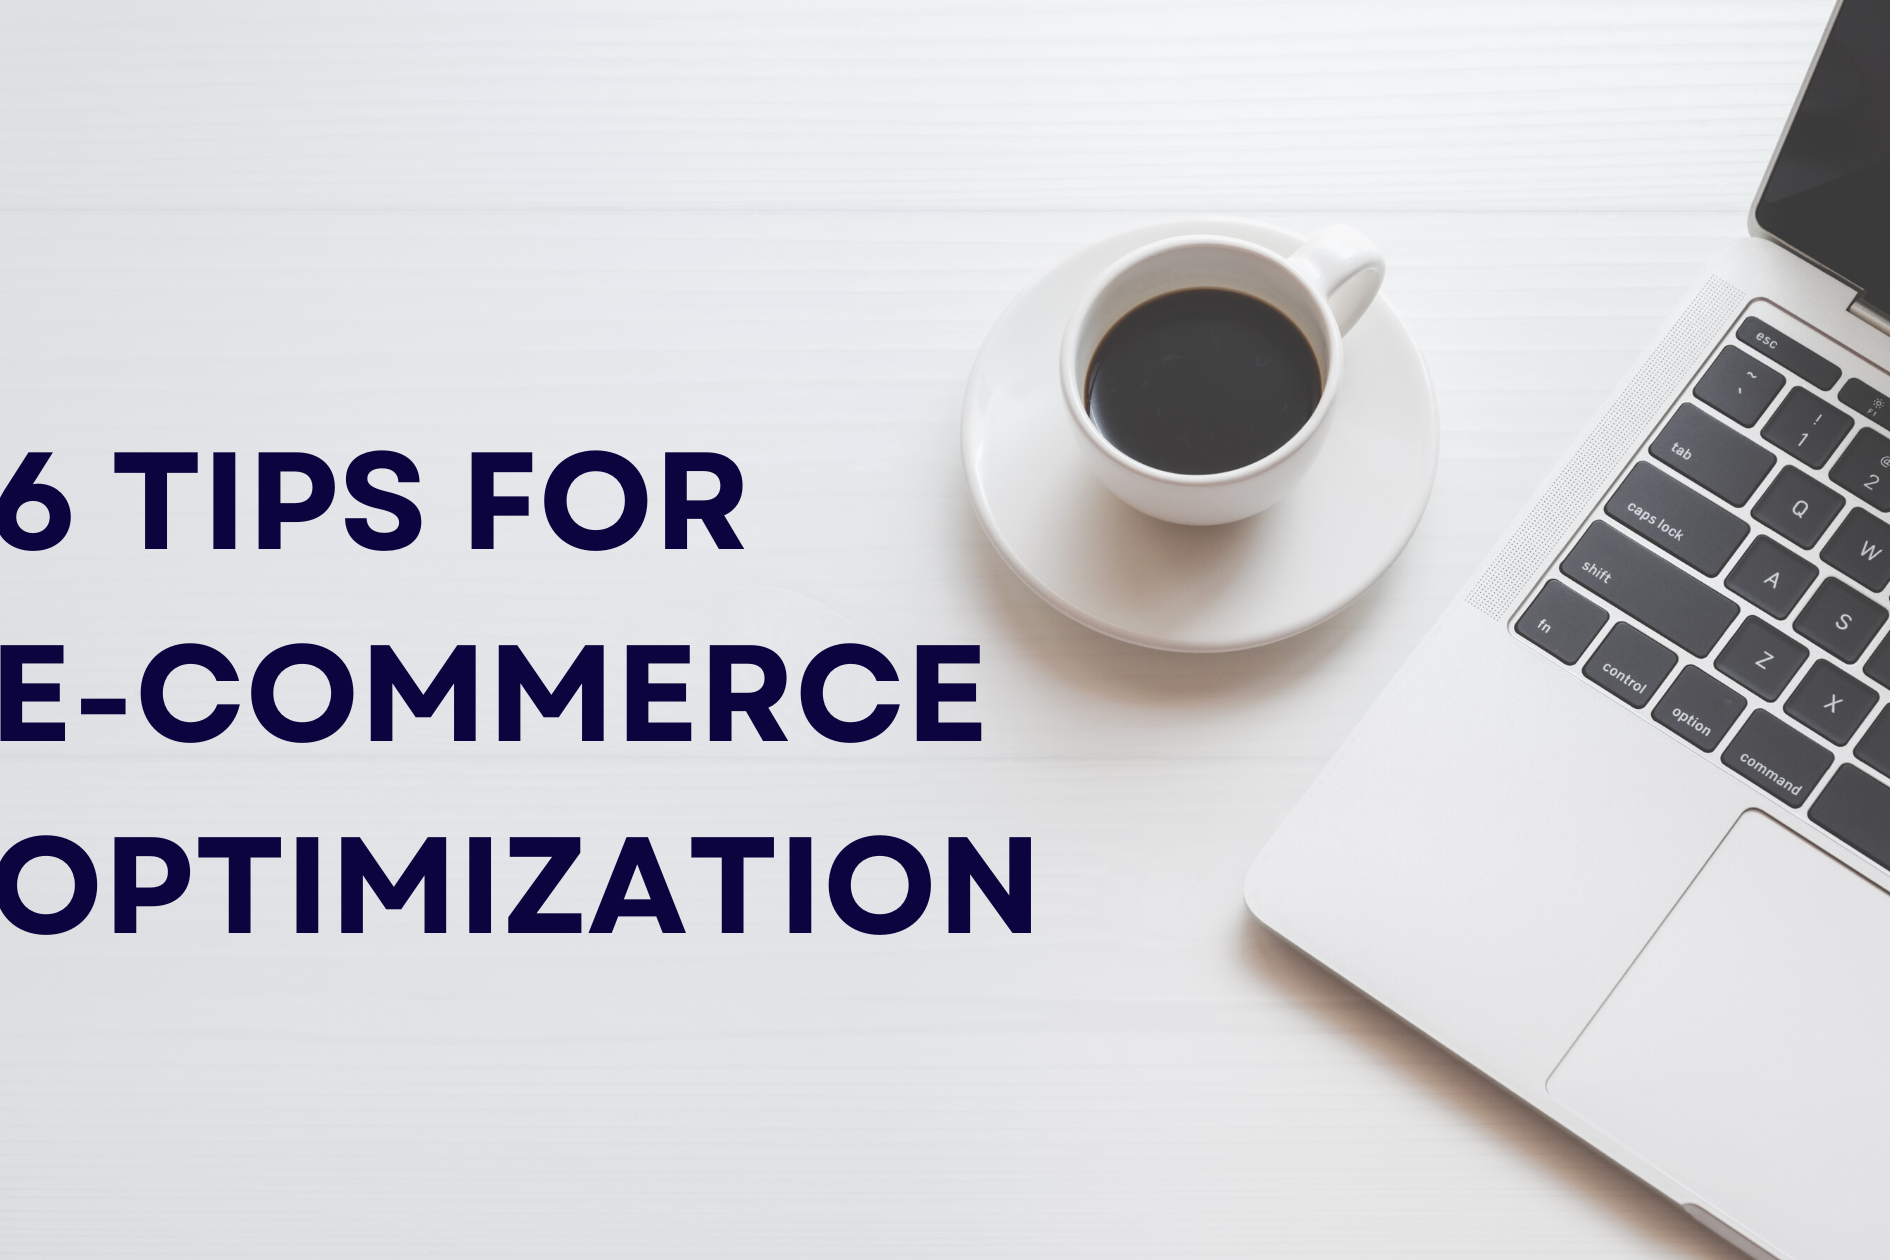 6 tips for e-commerce optimization